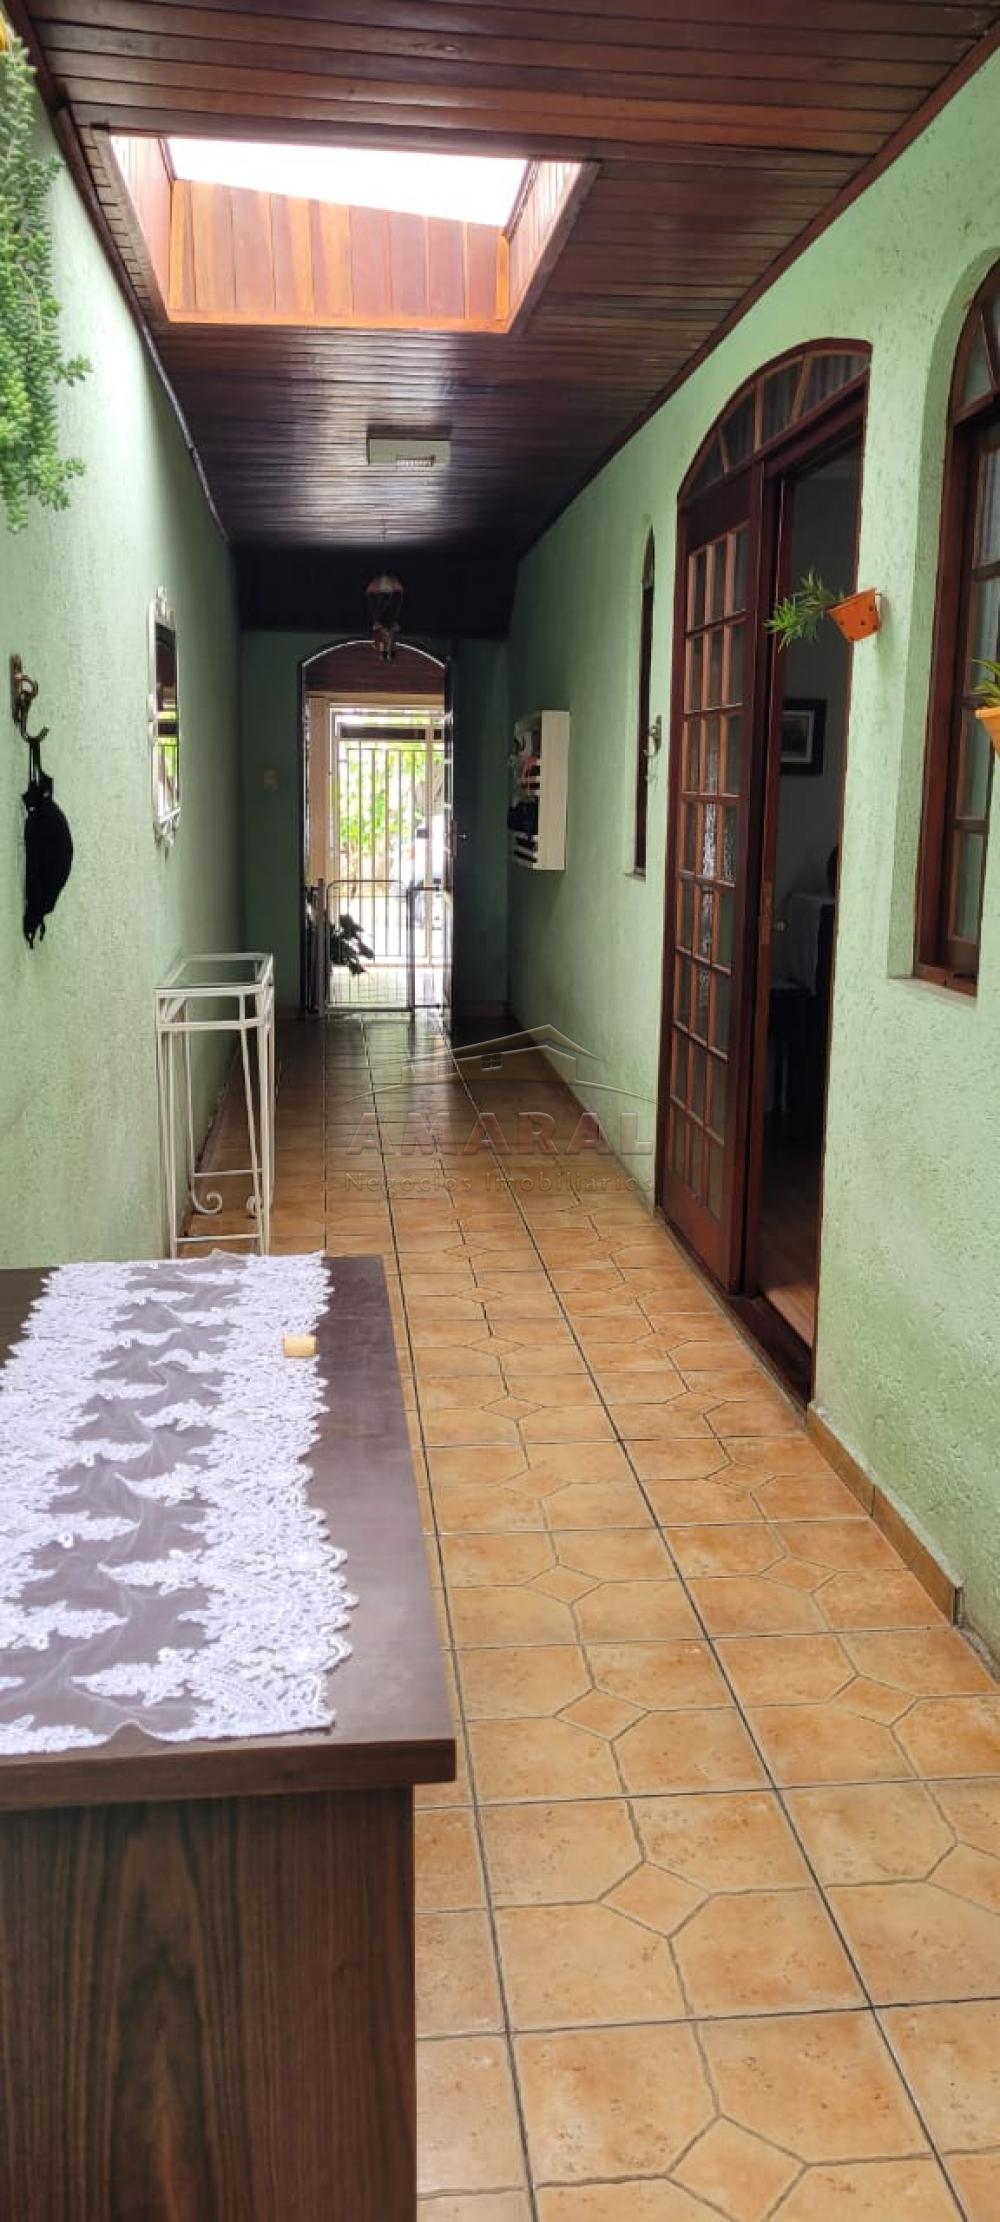 Comprar Casas / Térrea em Poá R$ 390.000,00 - Foto 9